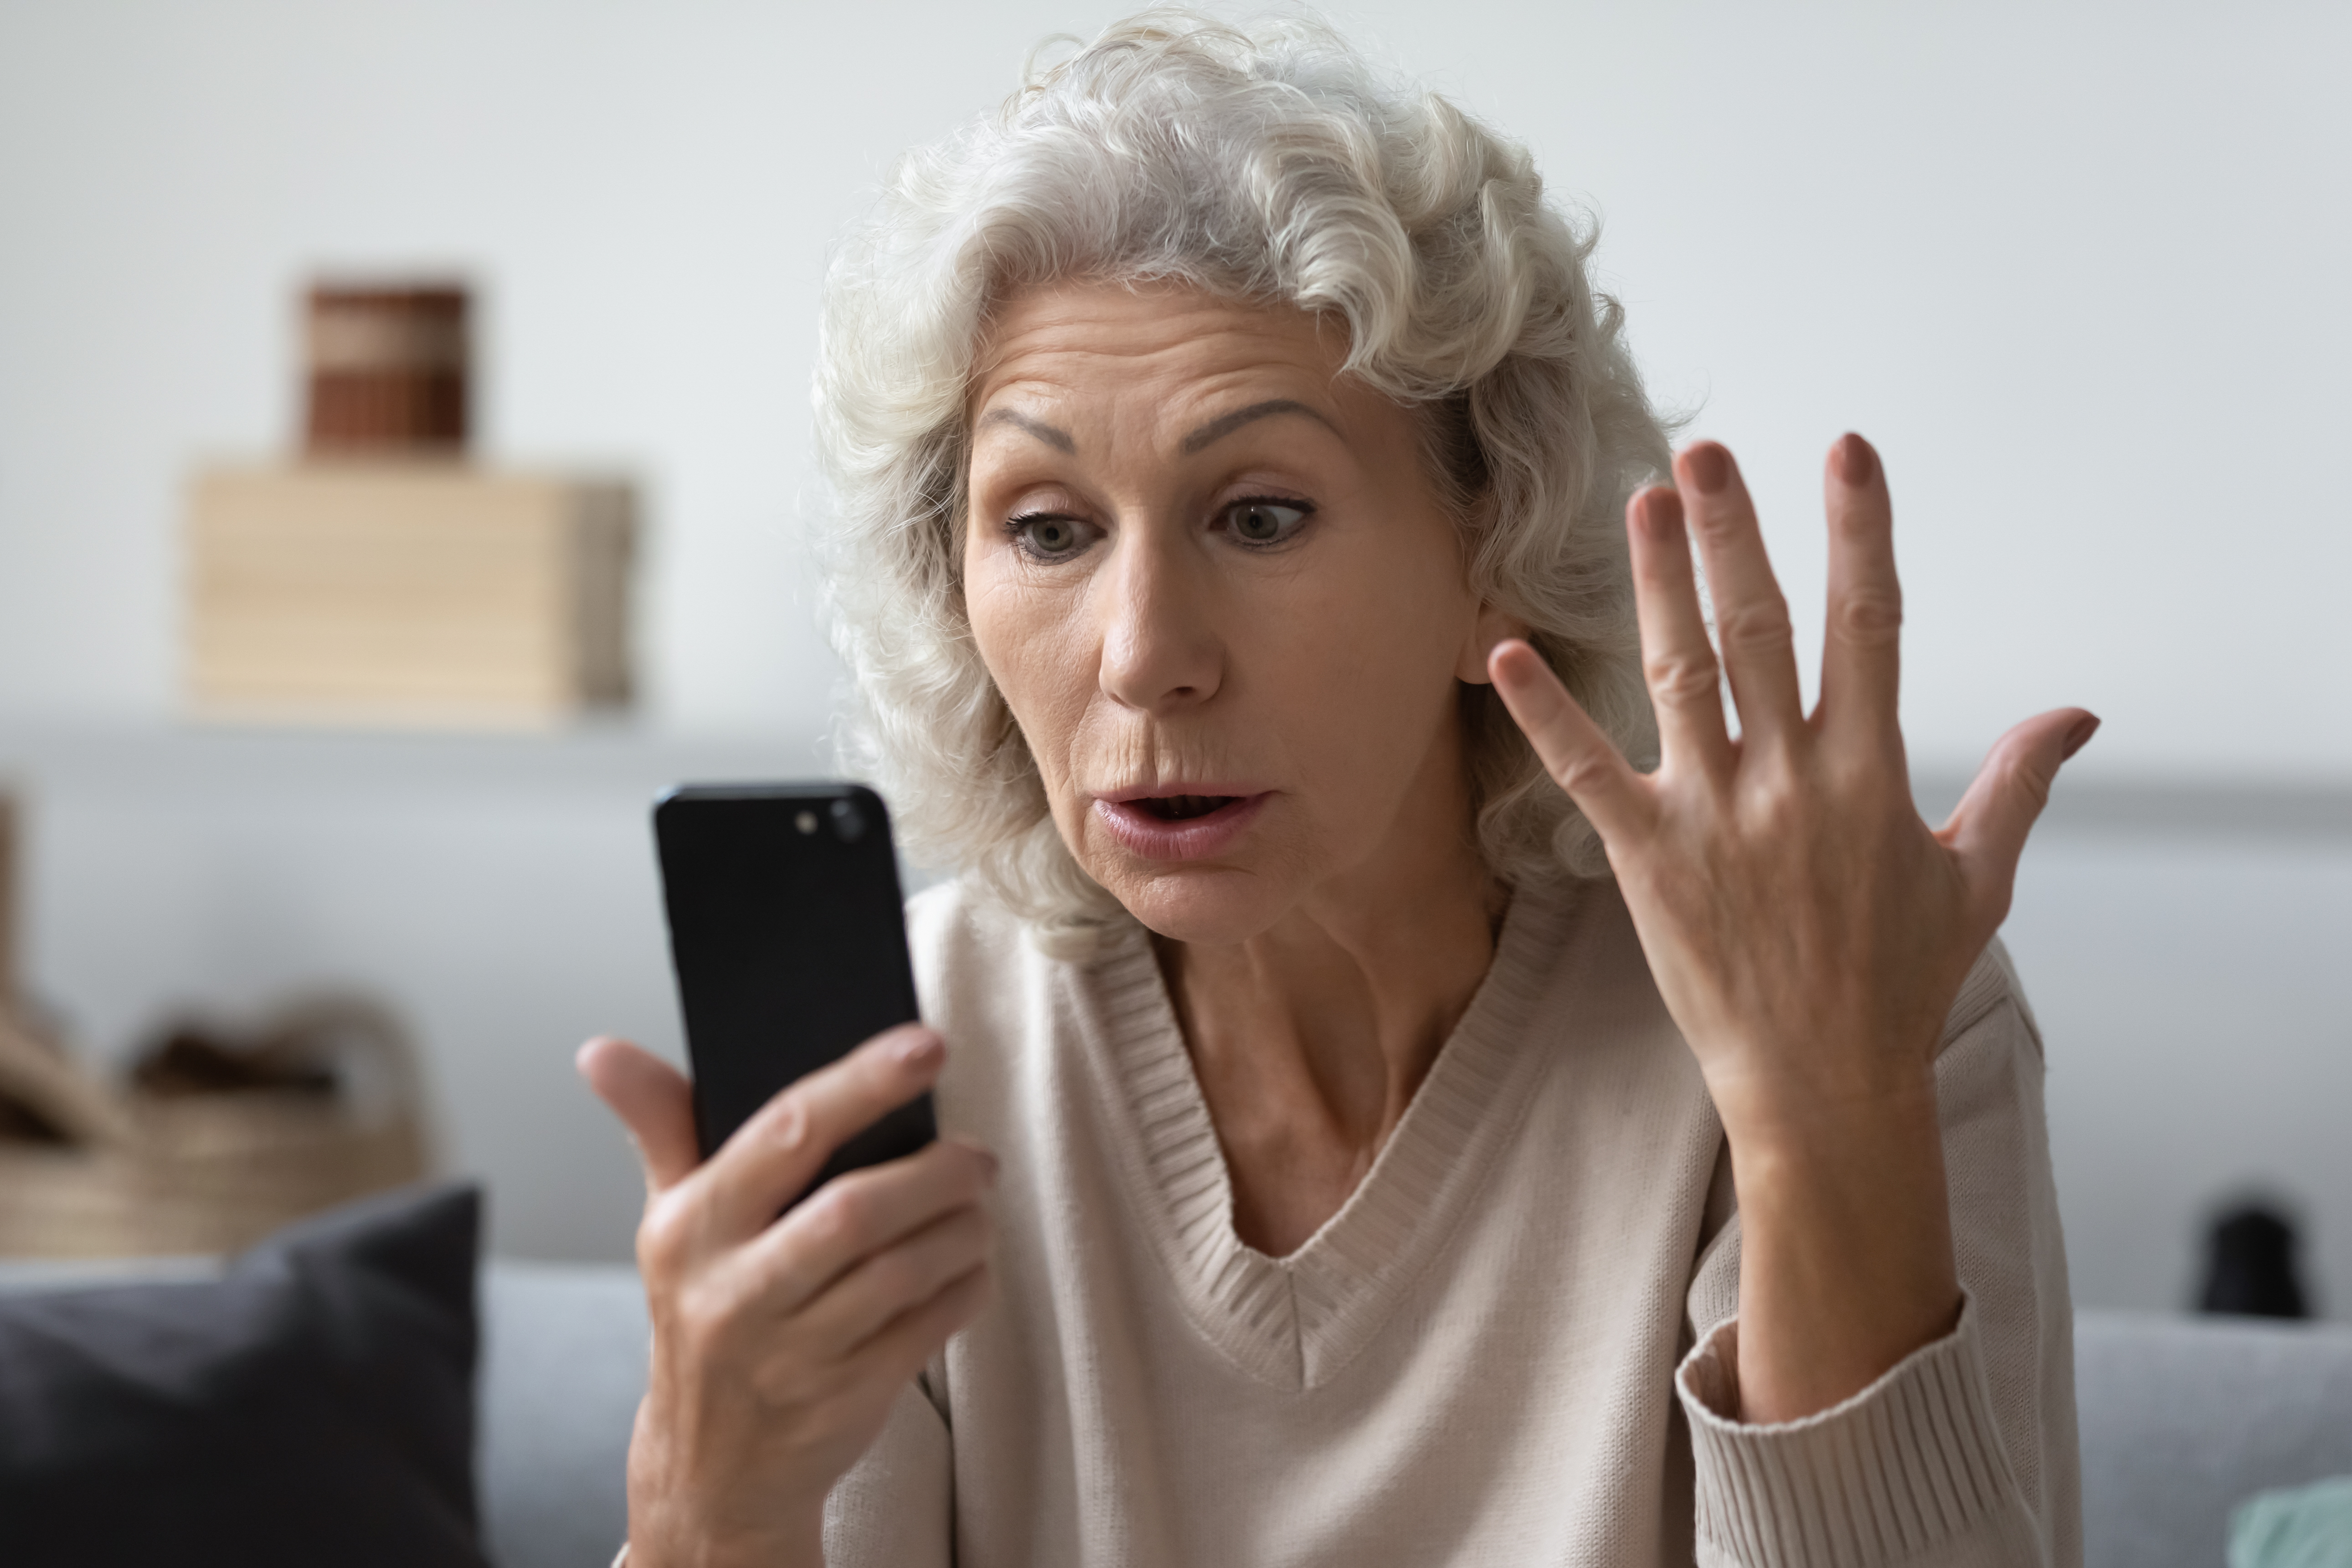 Une personne âgée lisant quelque chose sur son téléphone. | Source : Shutterstock/fizkes